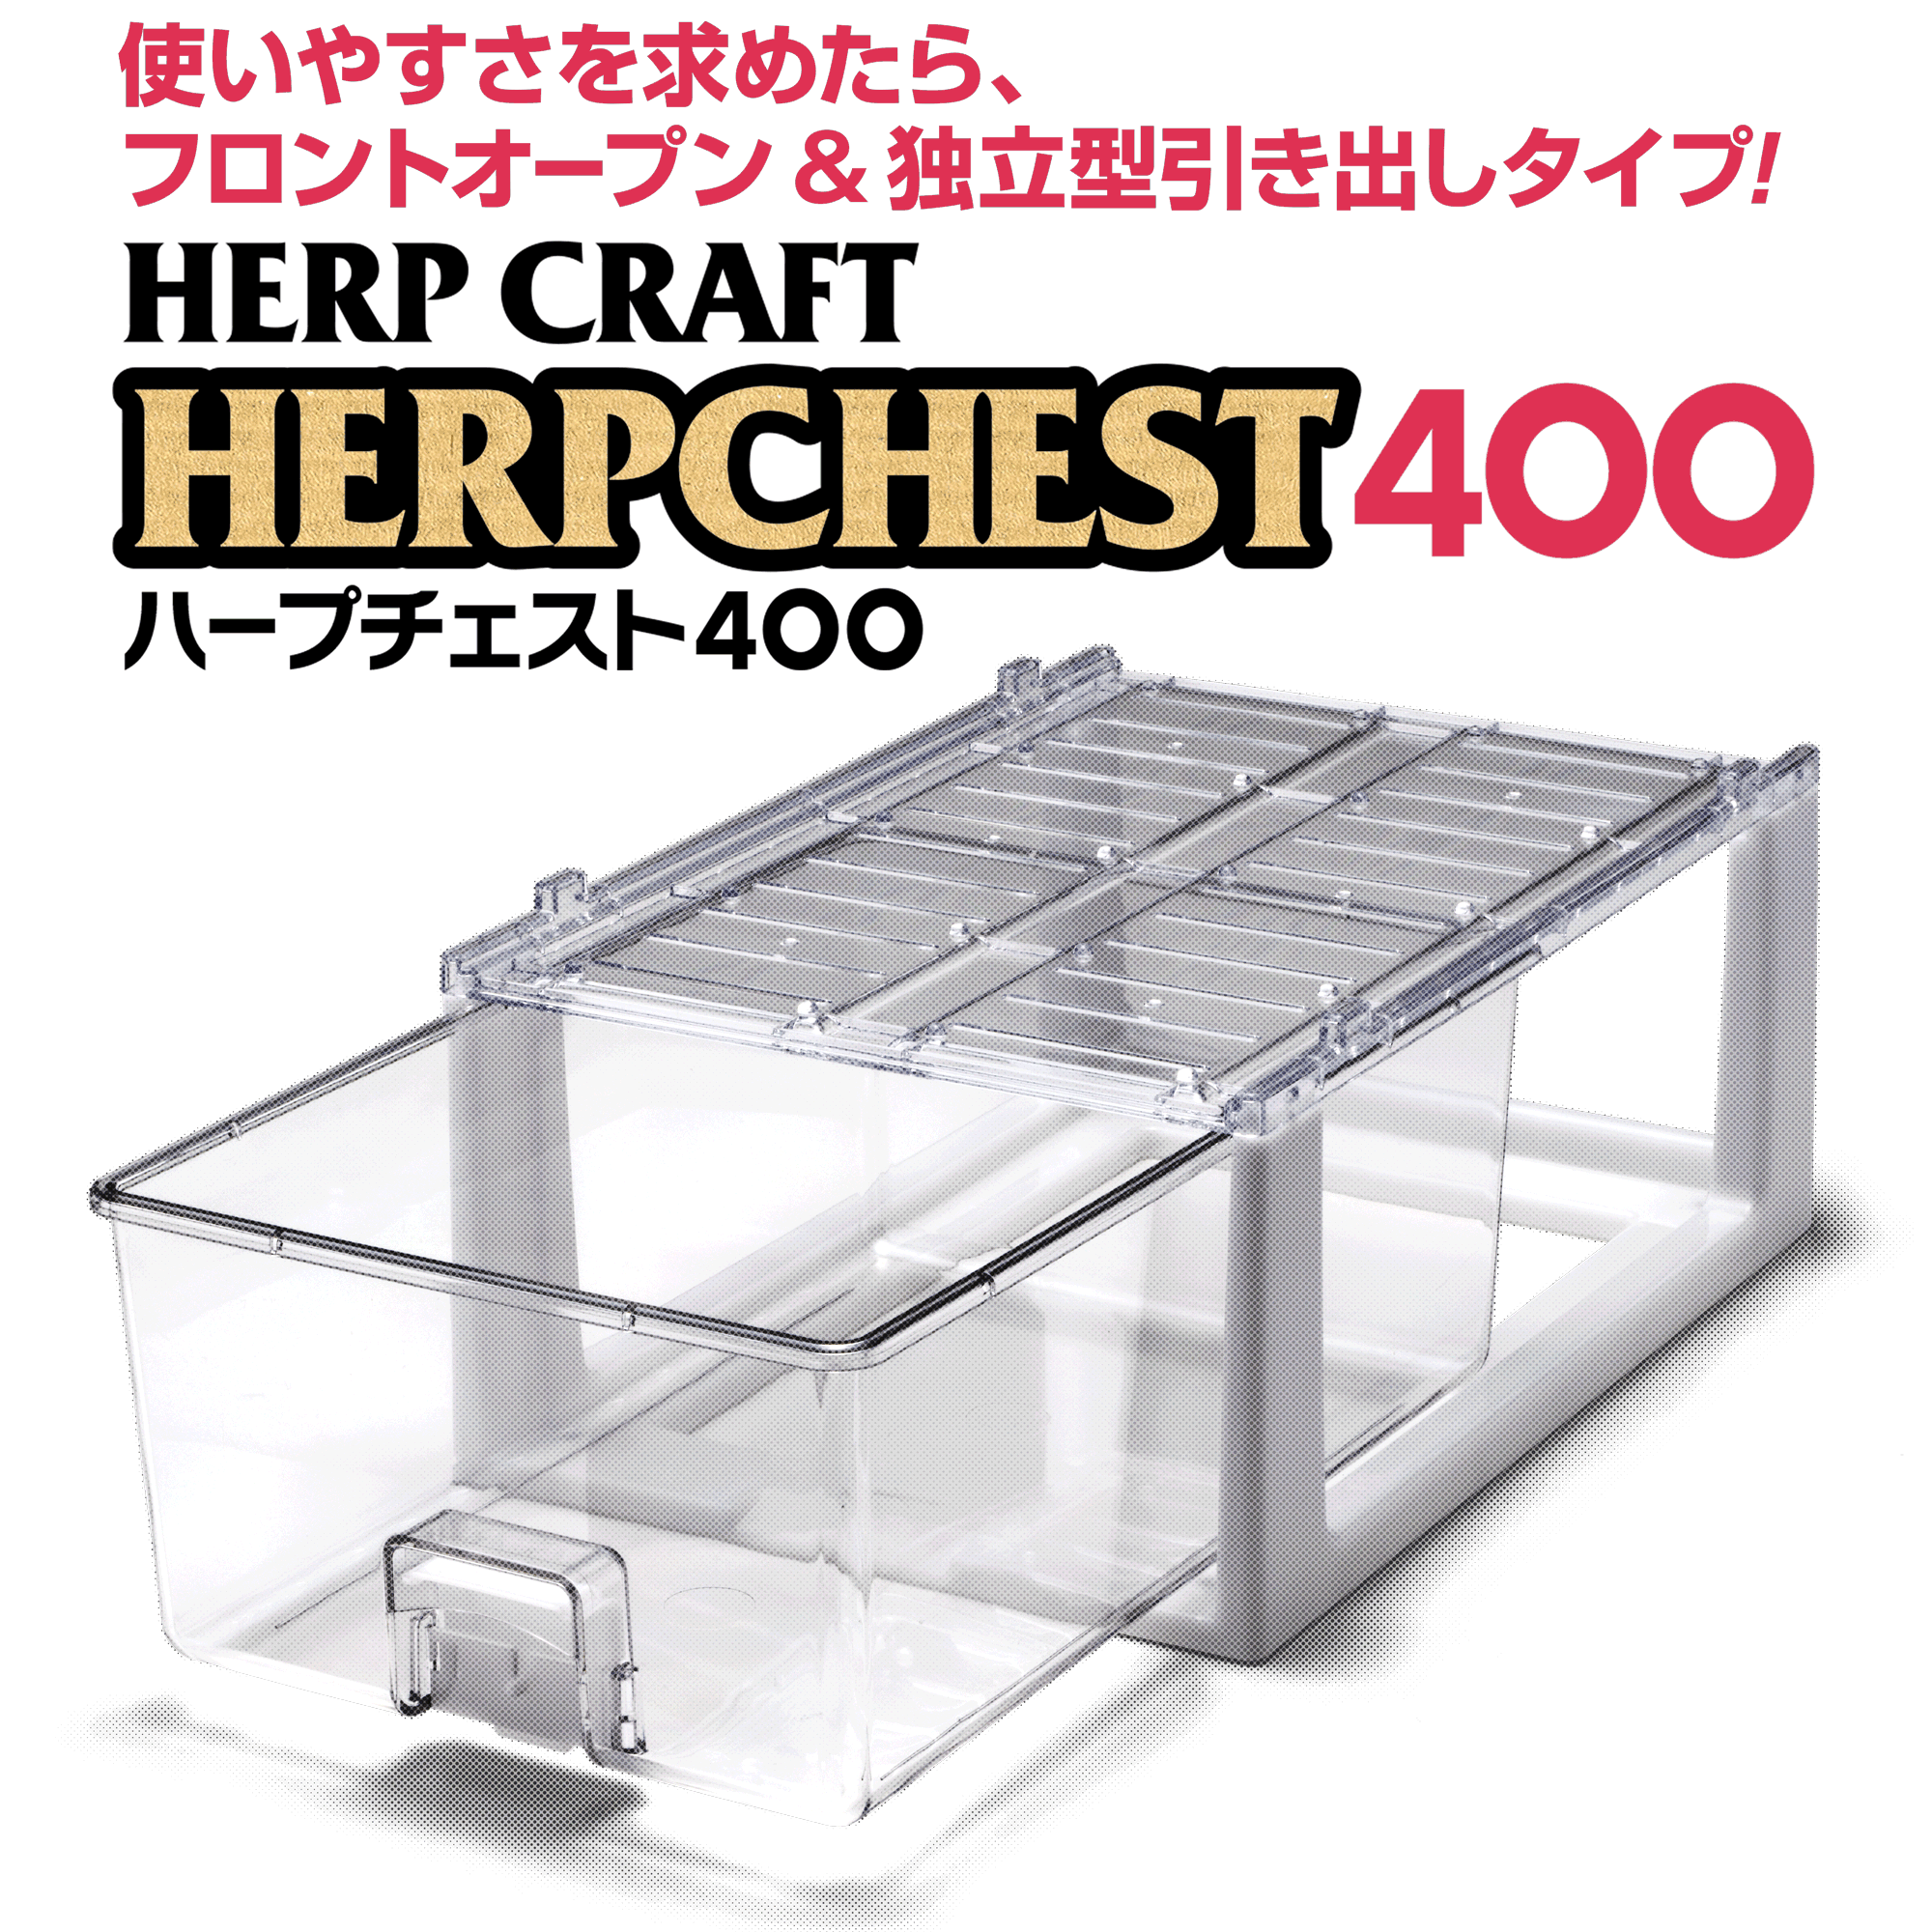 HERPCHEST 400